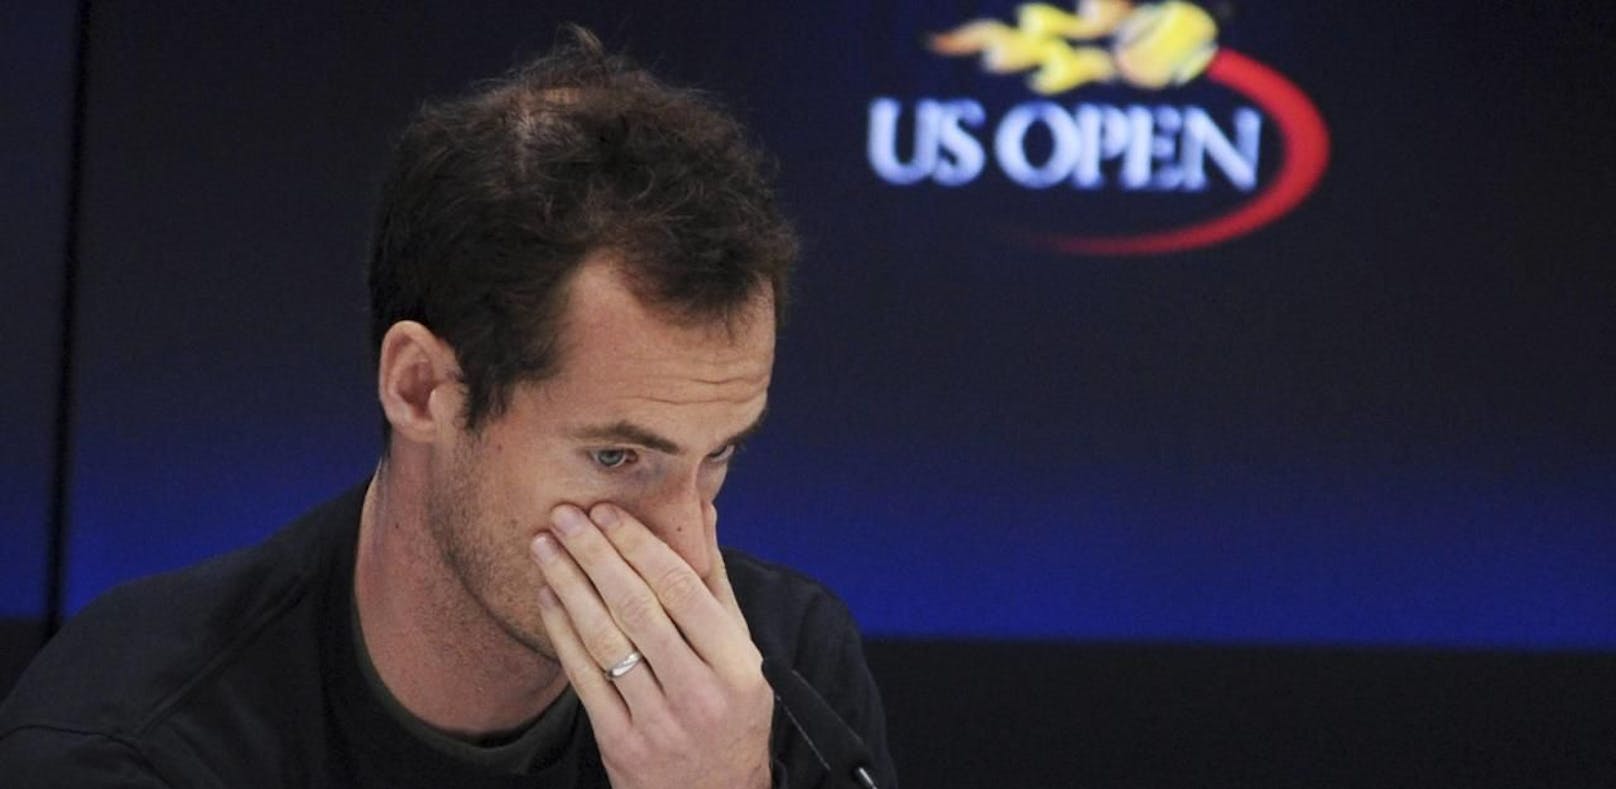 Absagen-Flut bei US Open! Auch Murray verletzt out